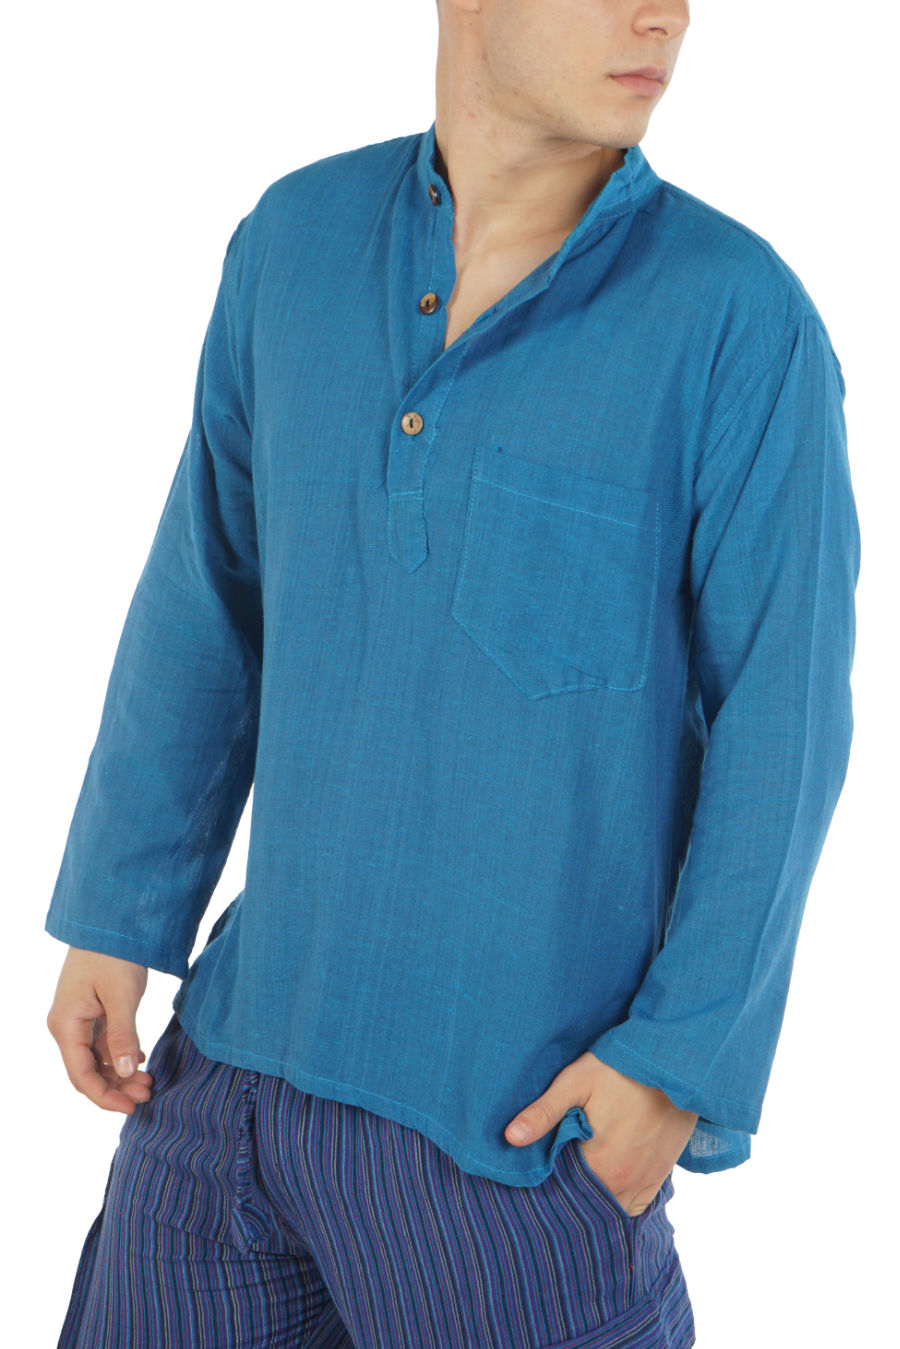 Cotton Mao Shirt - blue - Sunbeamfashion.gr